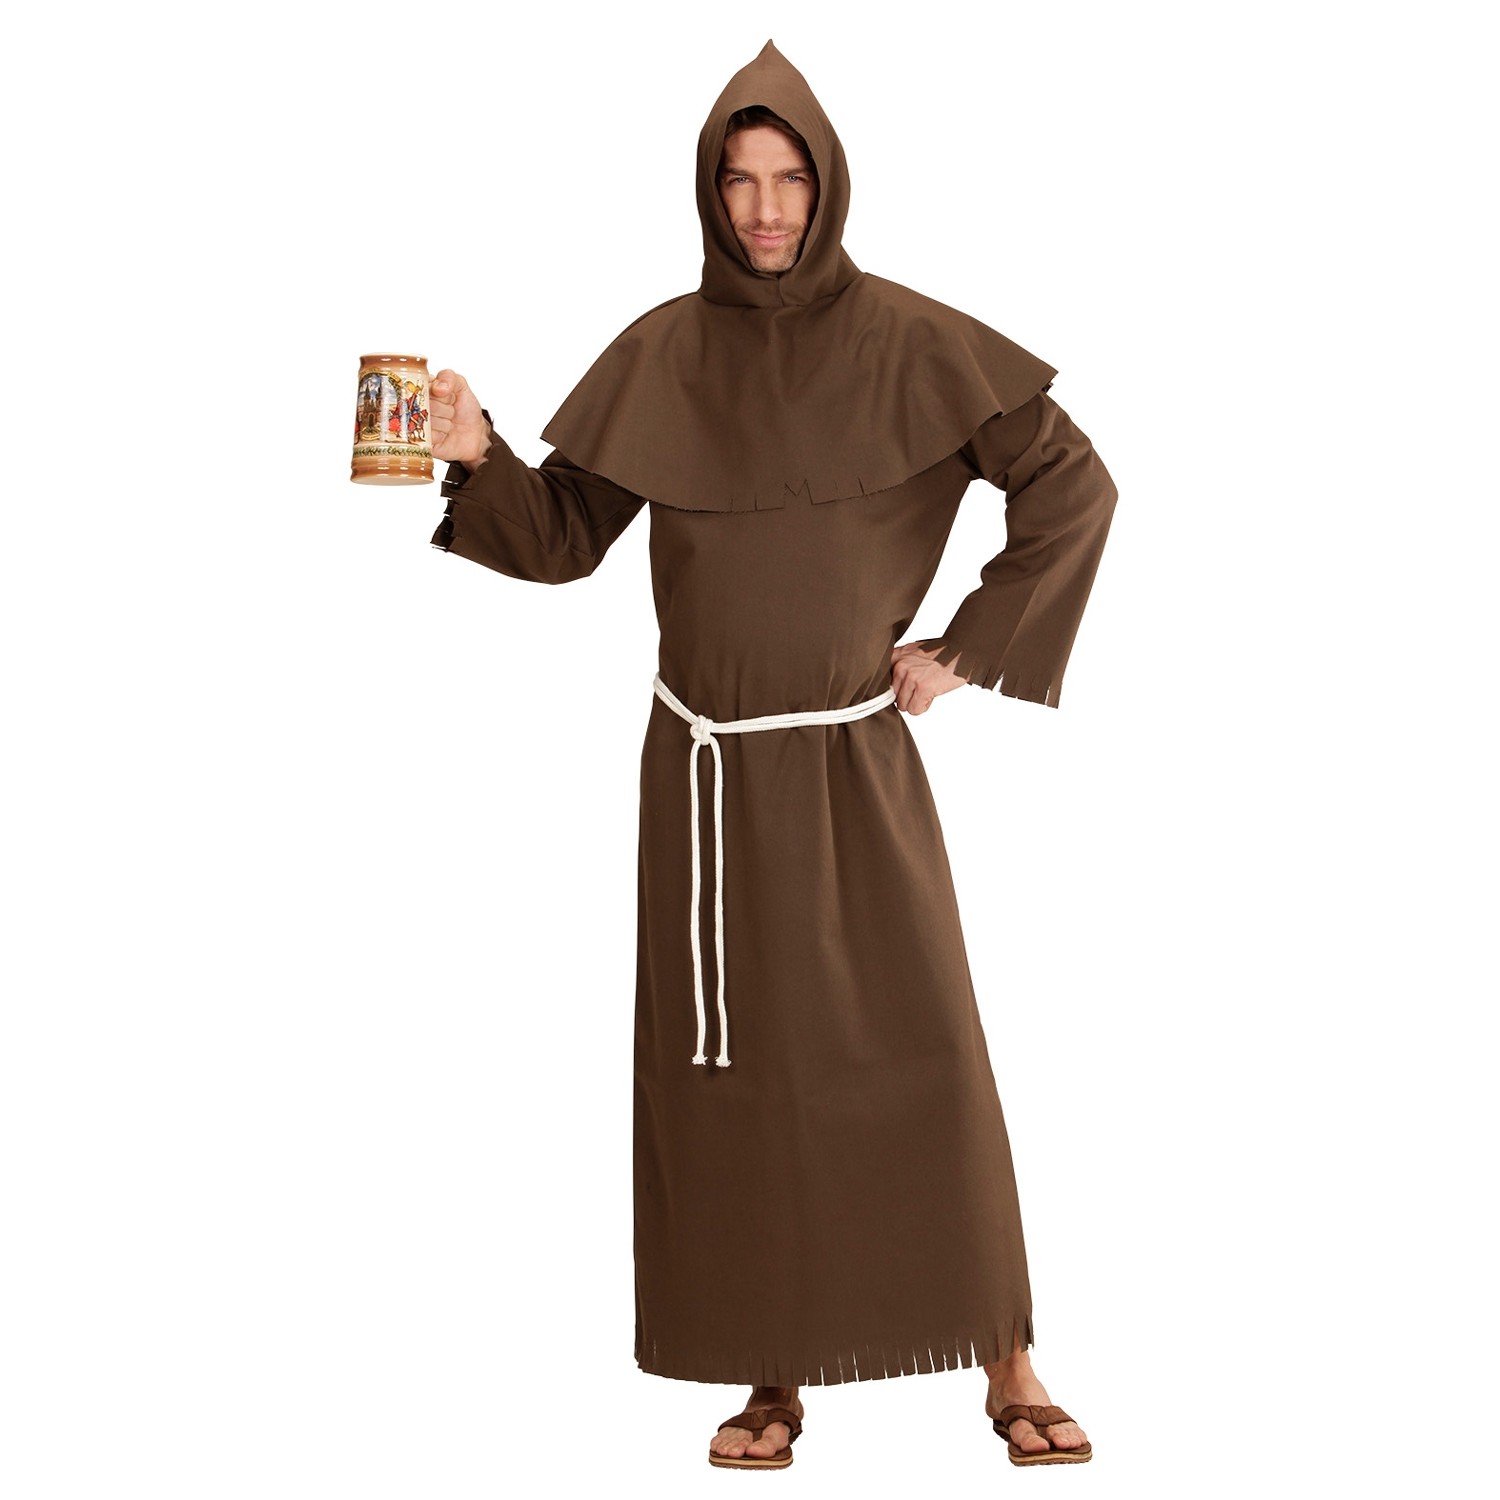 Herren-Kostüm Mönch Priester Nonne Bruder Mönchskostüm 